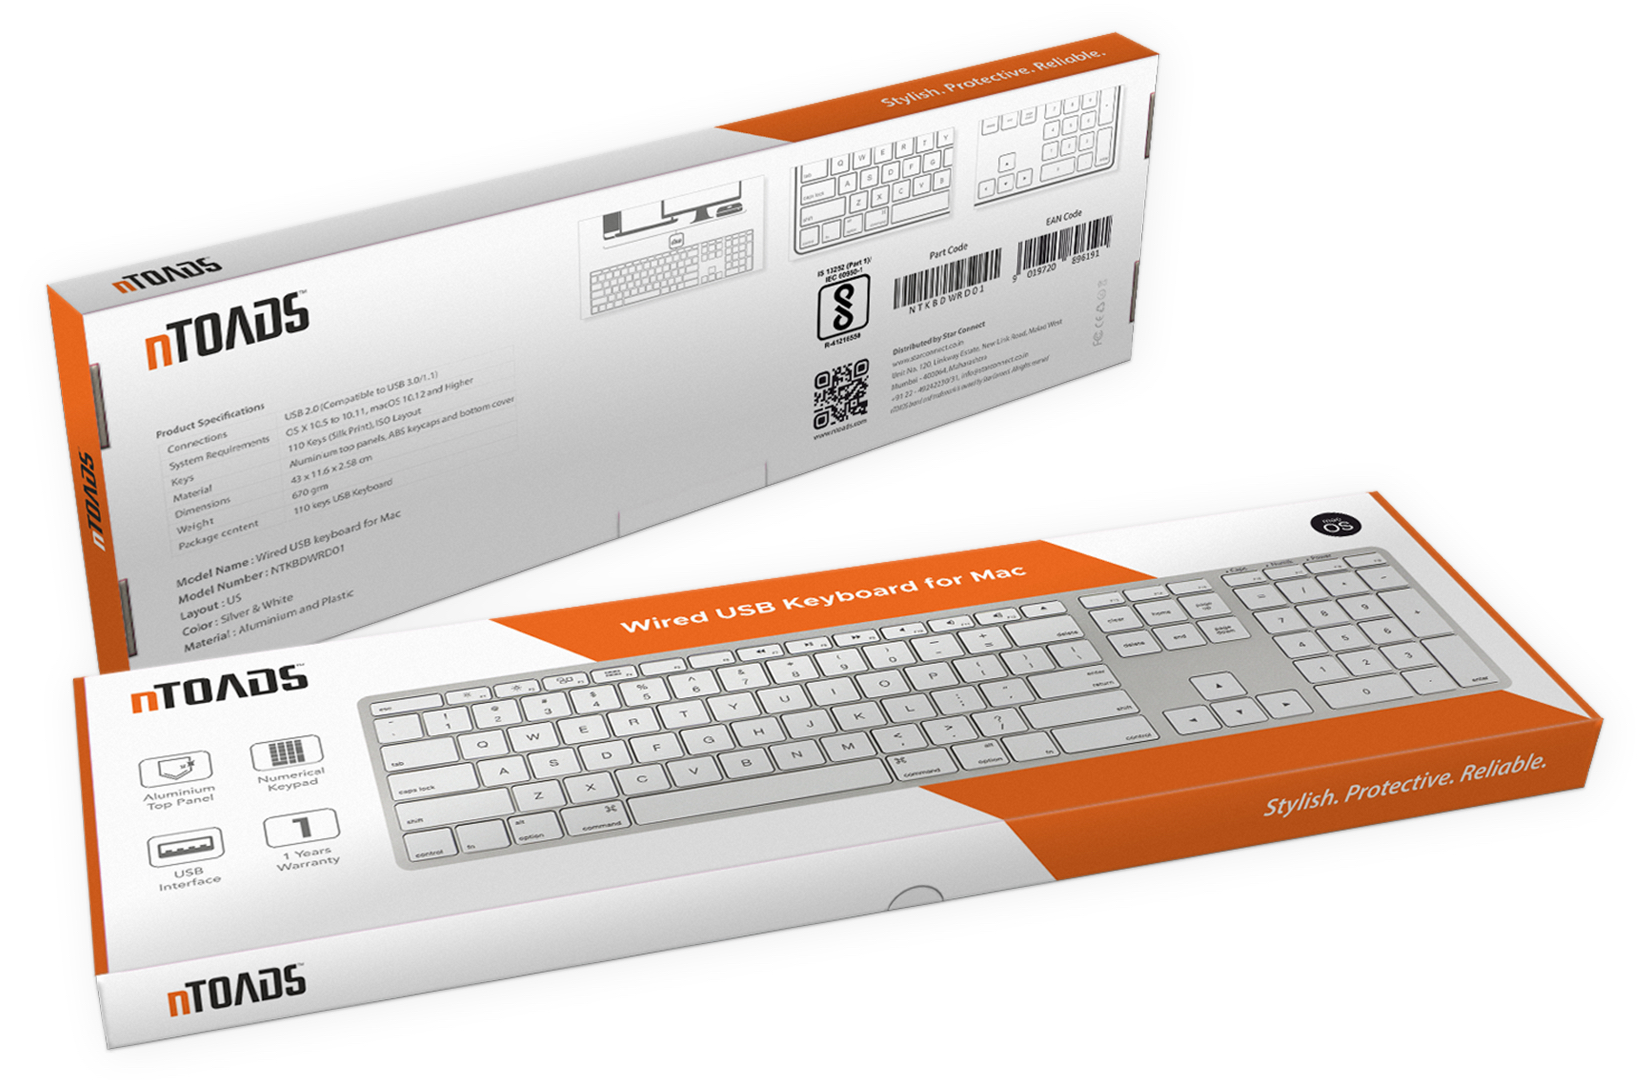 nTOADS Wired USB keyboard for Mac